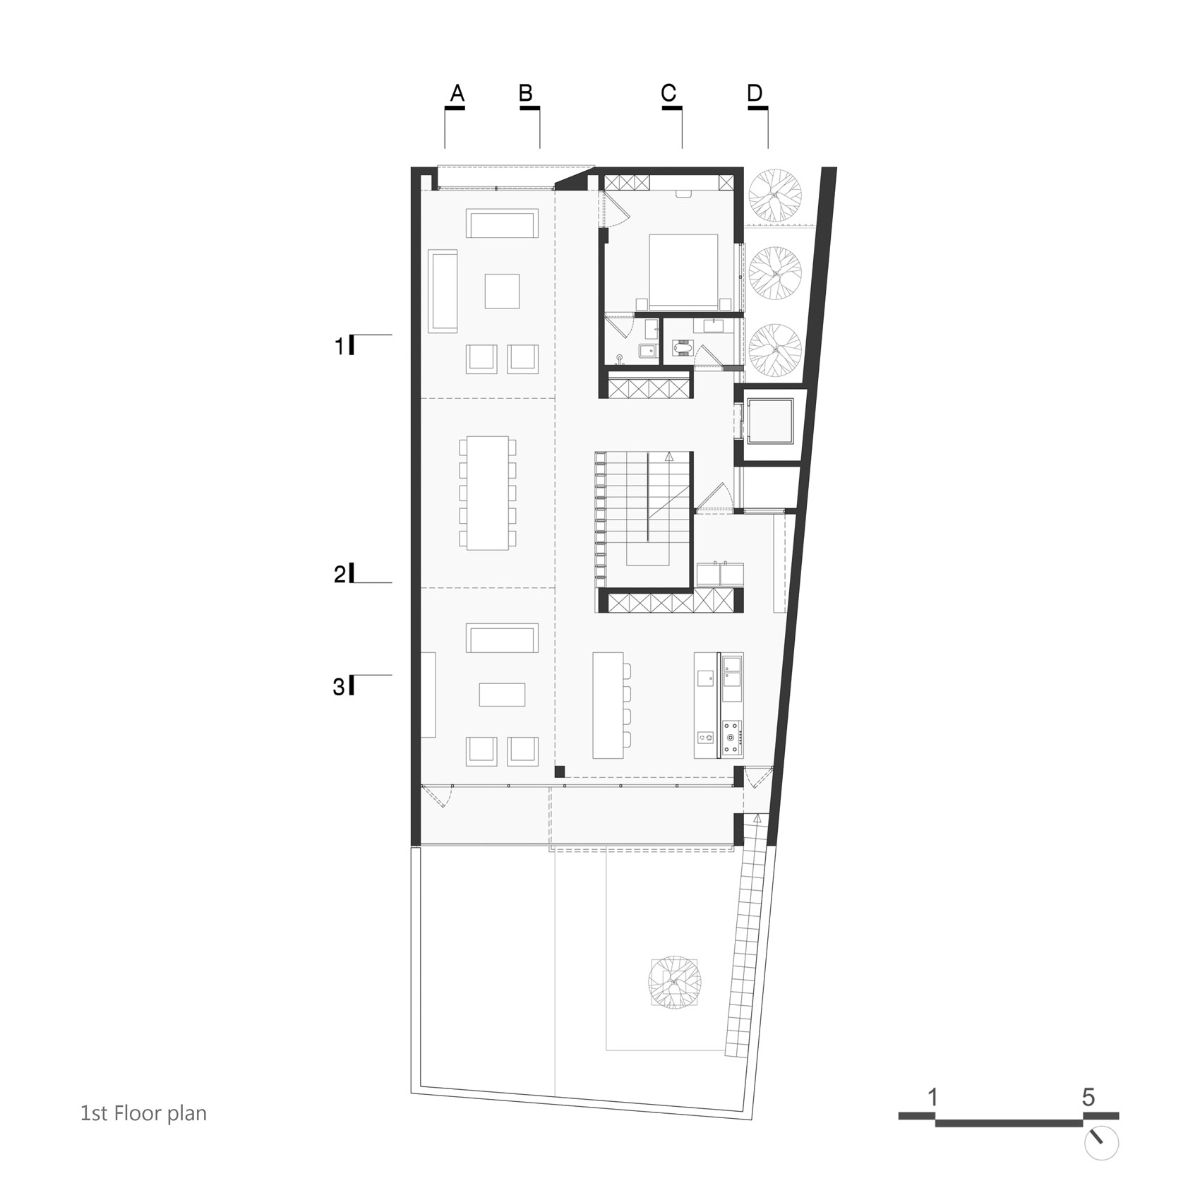 Pishva住宅一楼平面图。